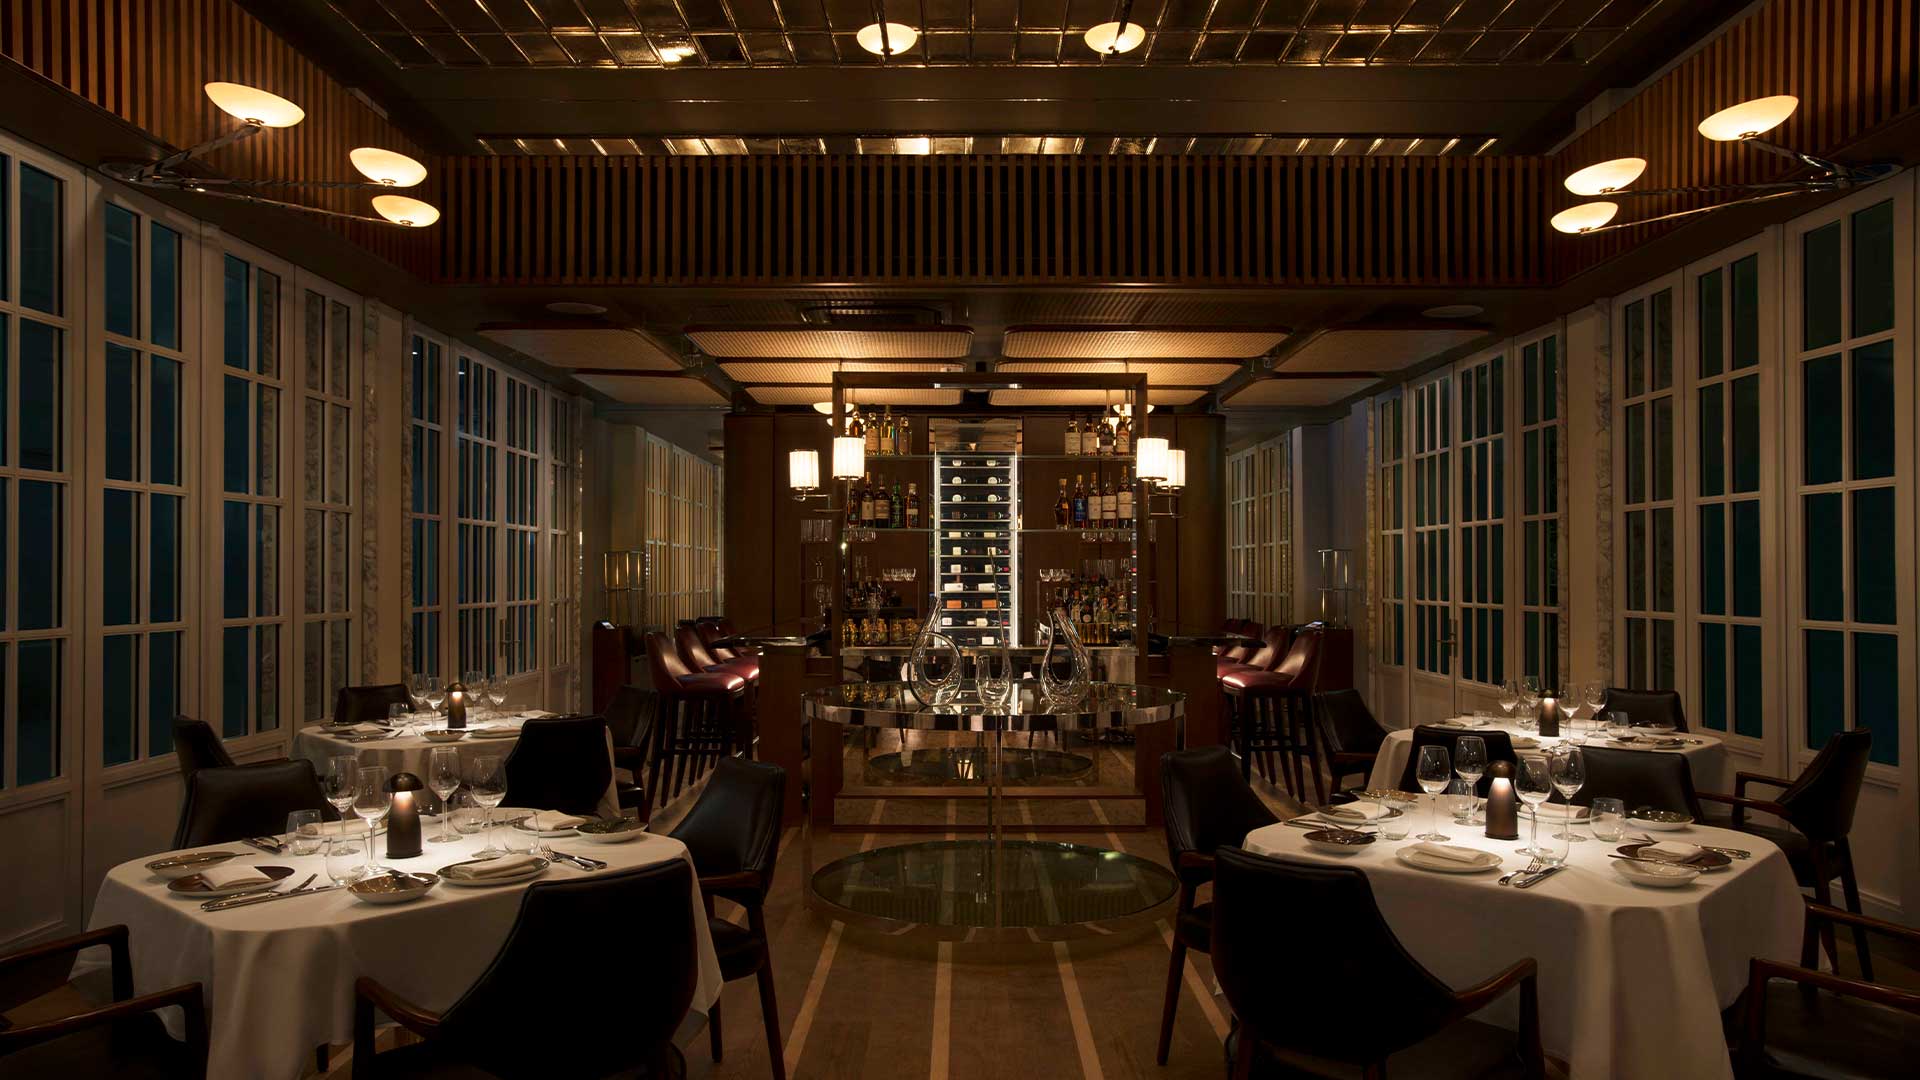 싱가포르에서 프라이빗 이벤트와 미팅을 개최할 수 있는 레스토랑 Spago Dining Room의 메인 다이닝 구역